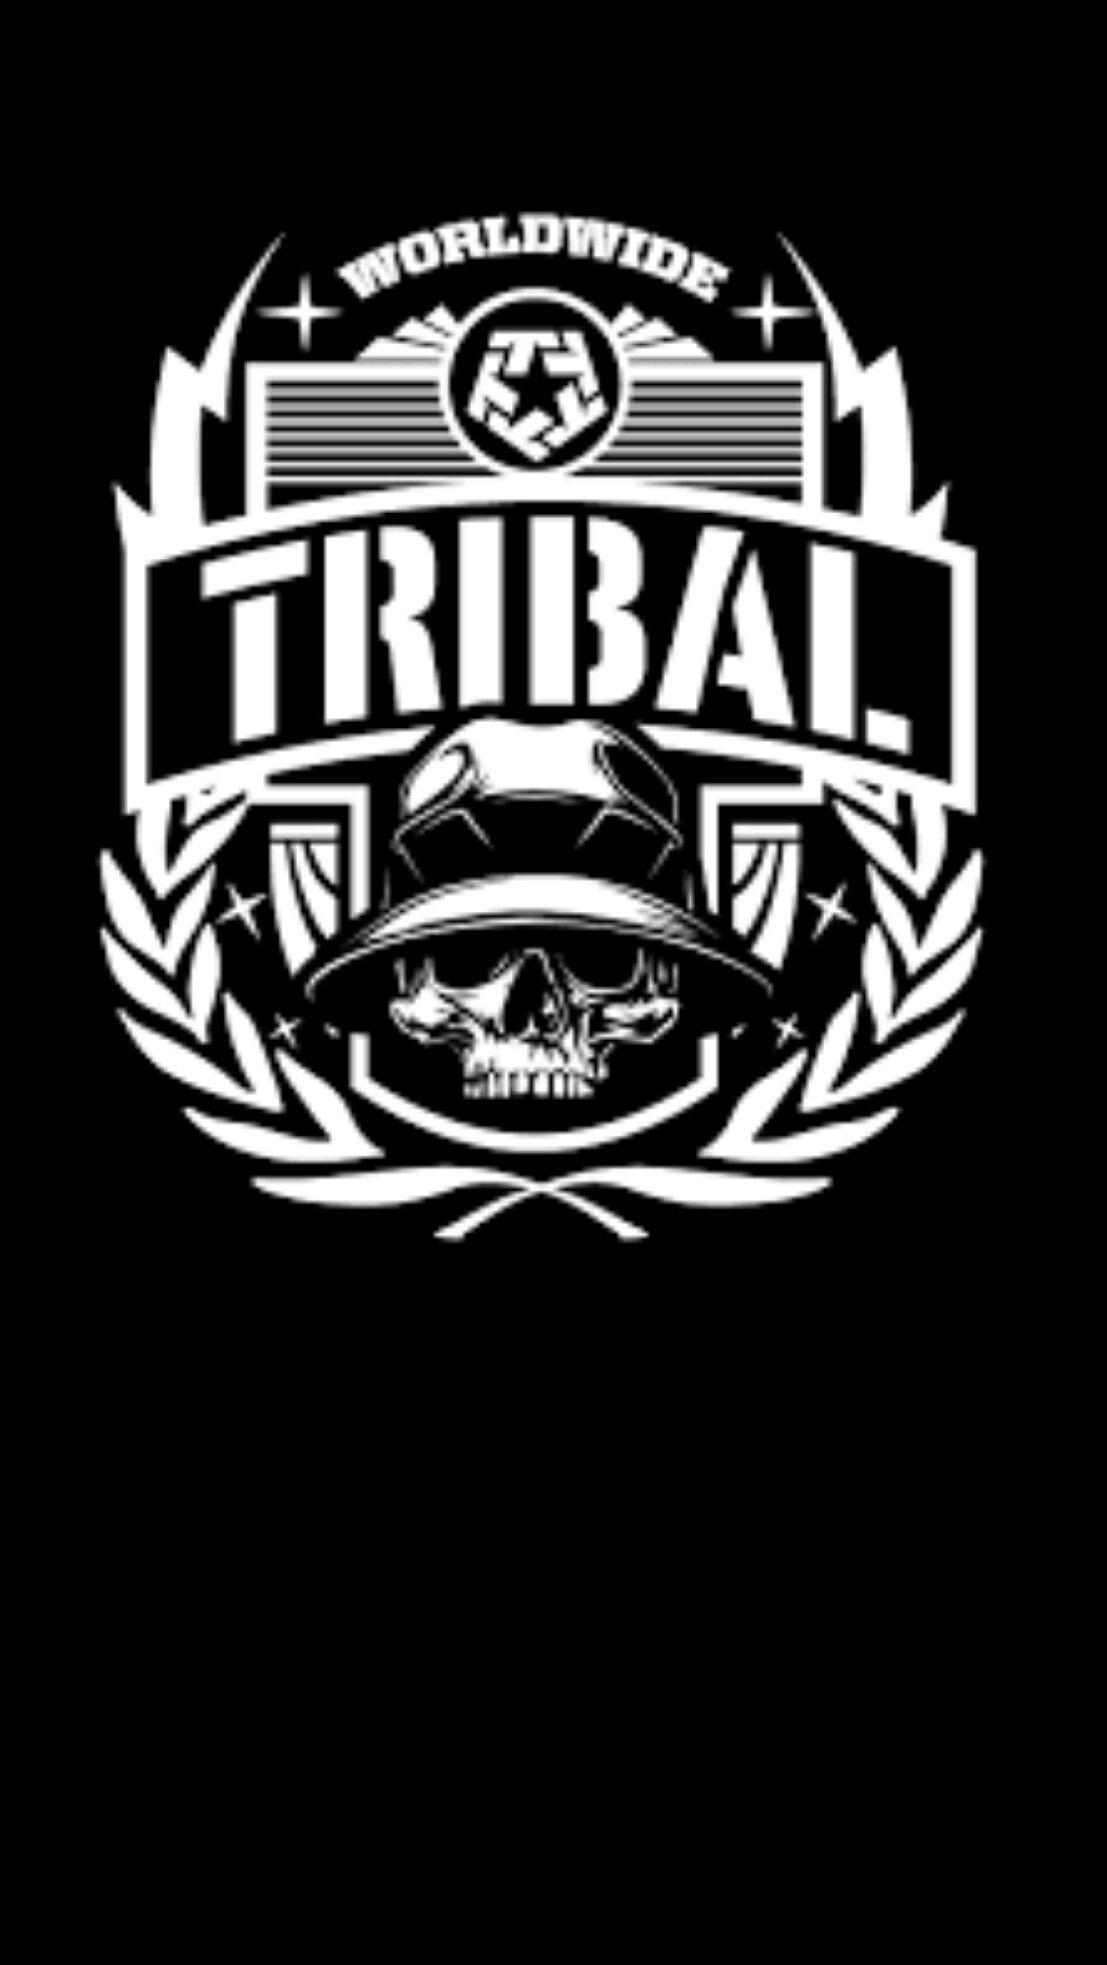 Tribal Gear HD Wallpaper